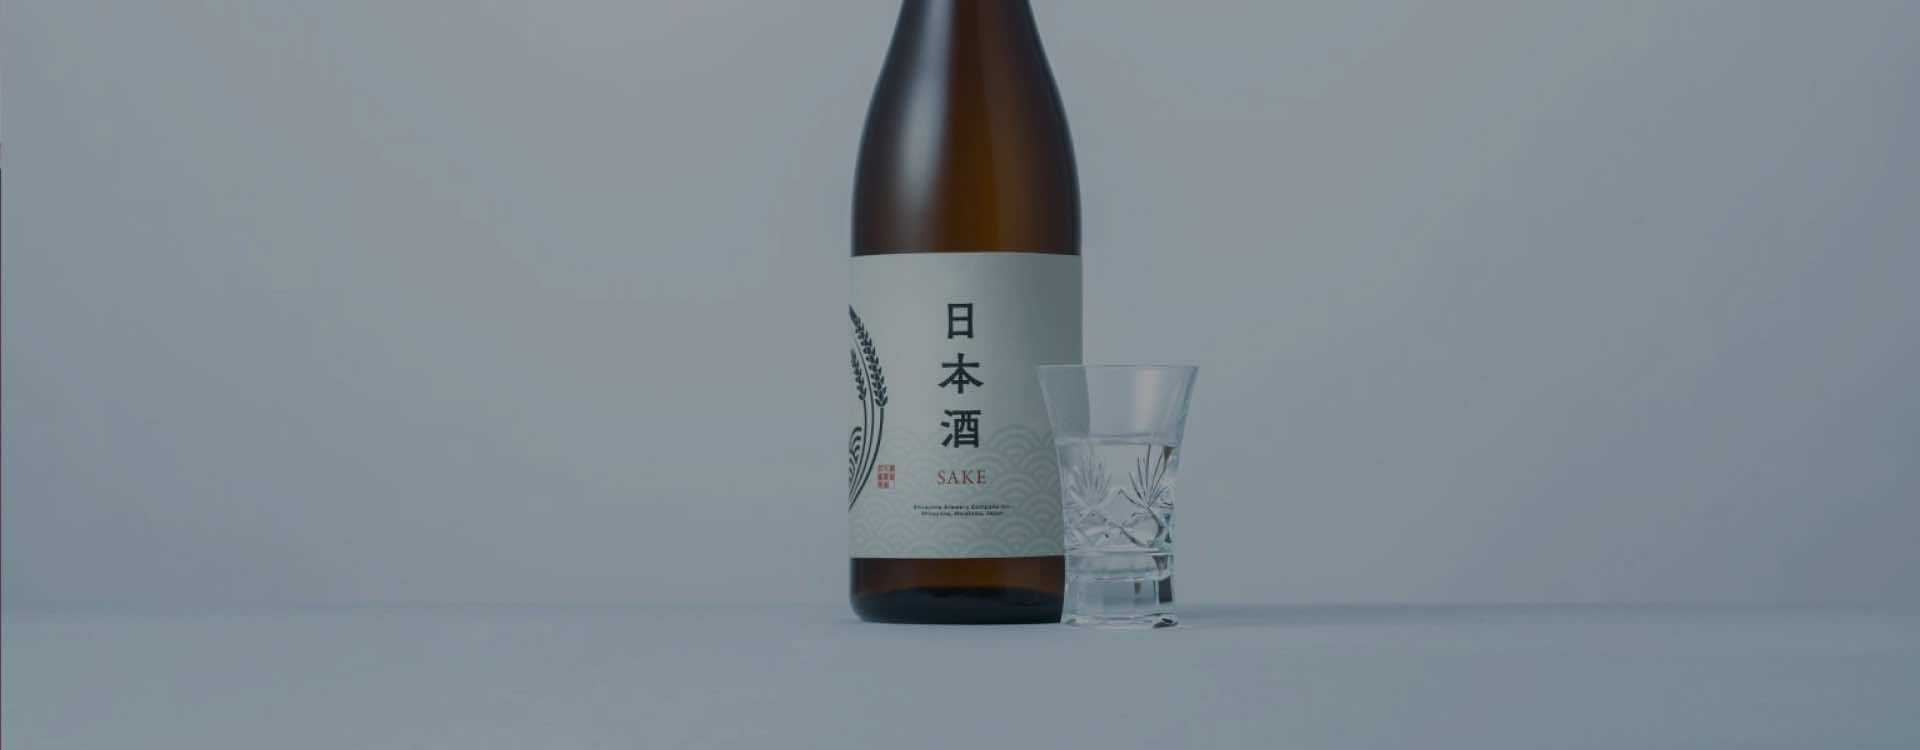 スライド画像-日本酒